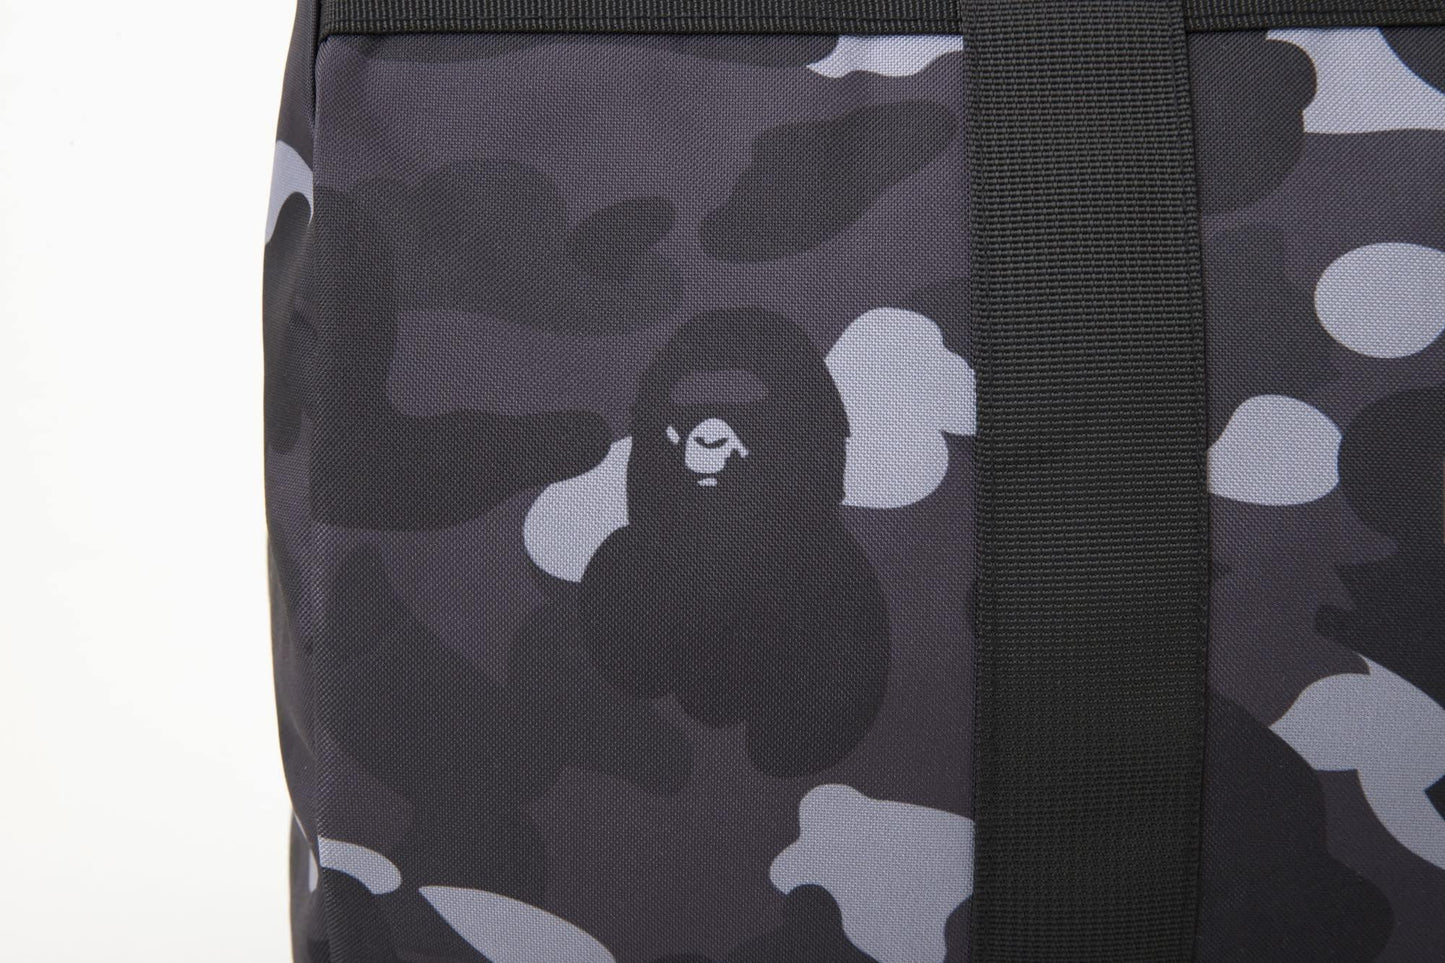 BAPE E-Mook A Bathing Ape 2022 S/S Collection bag set - HARUYAMA